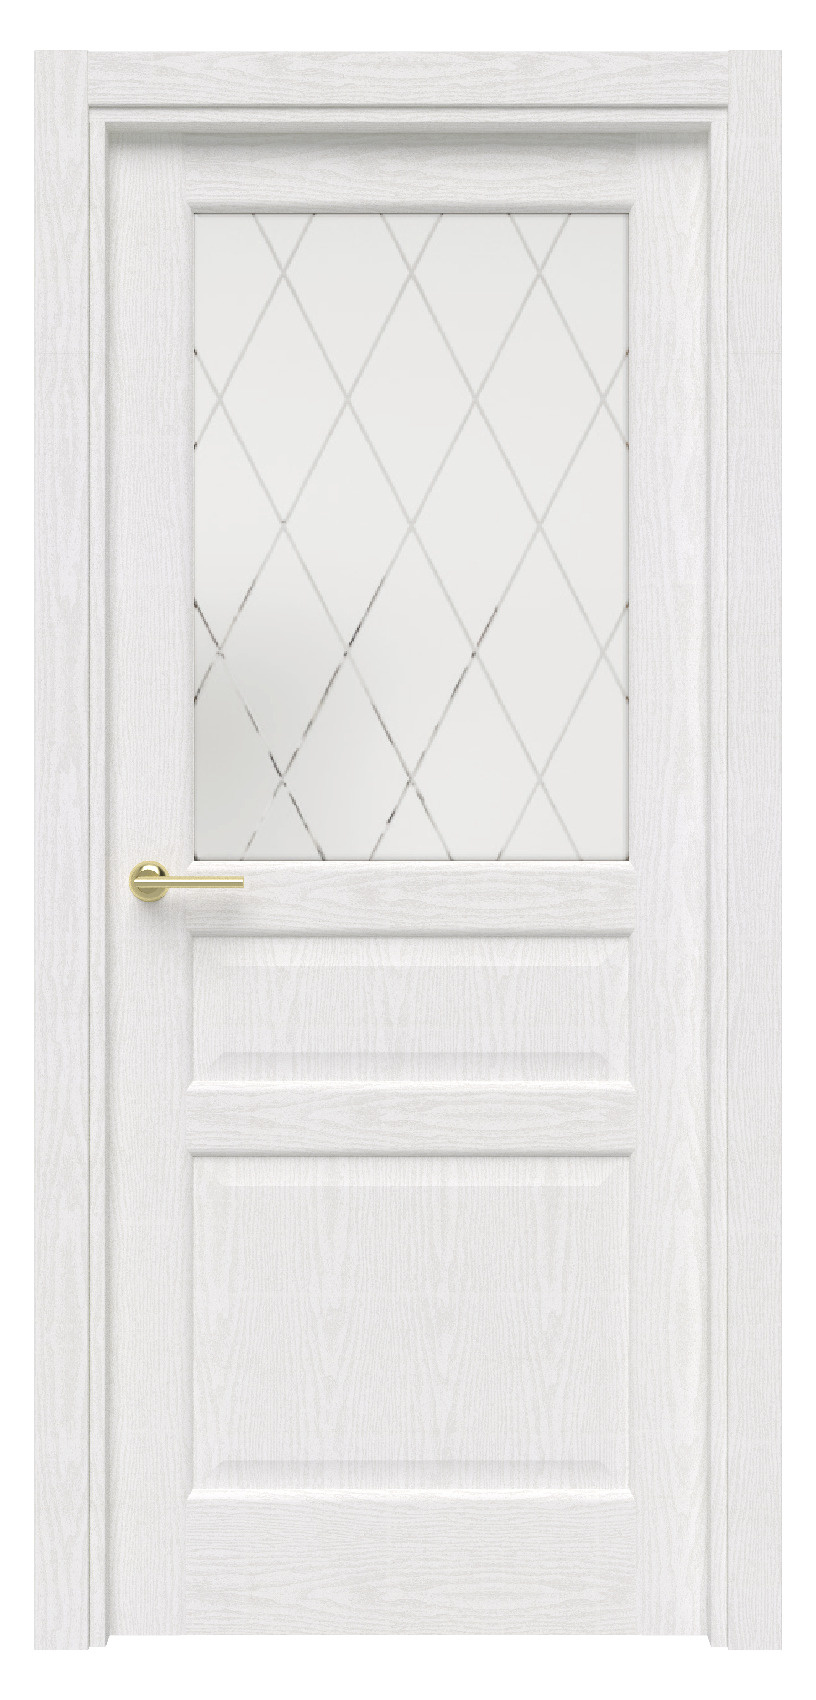 Questdoors Межкомнатная дверь QXS4, арт. 17606 - фото №1